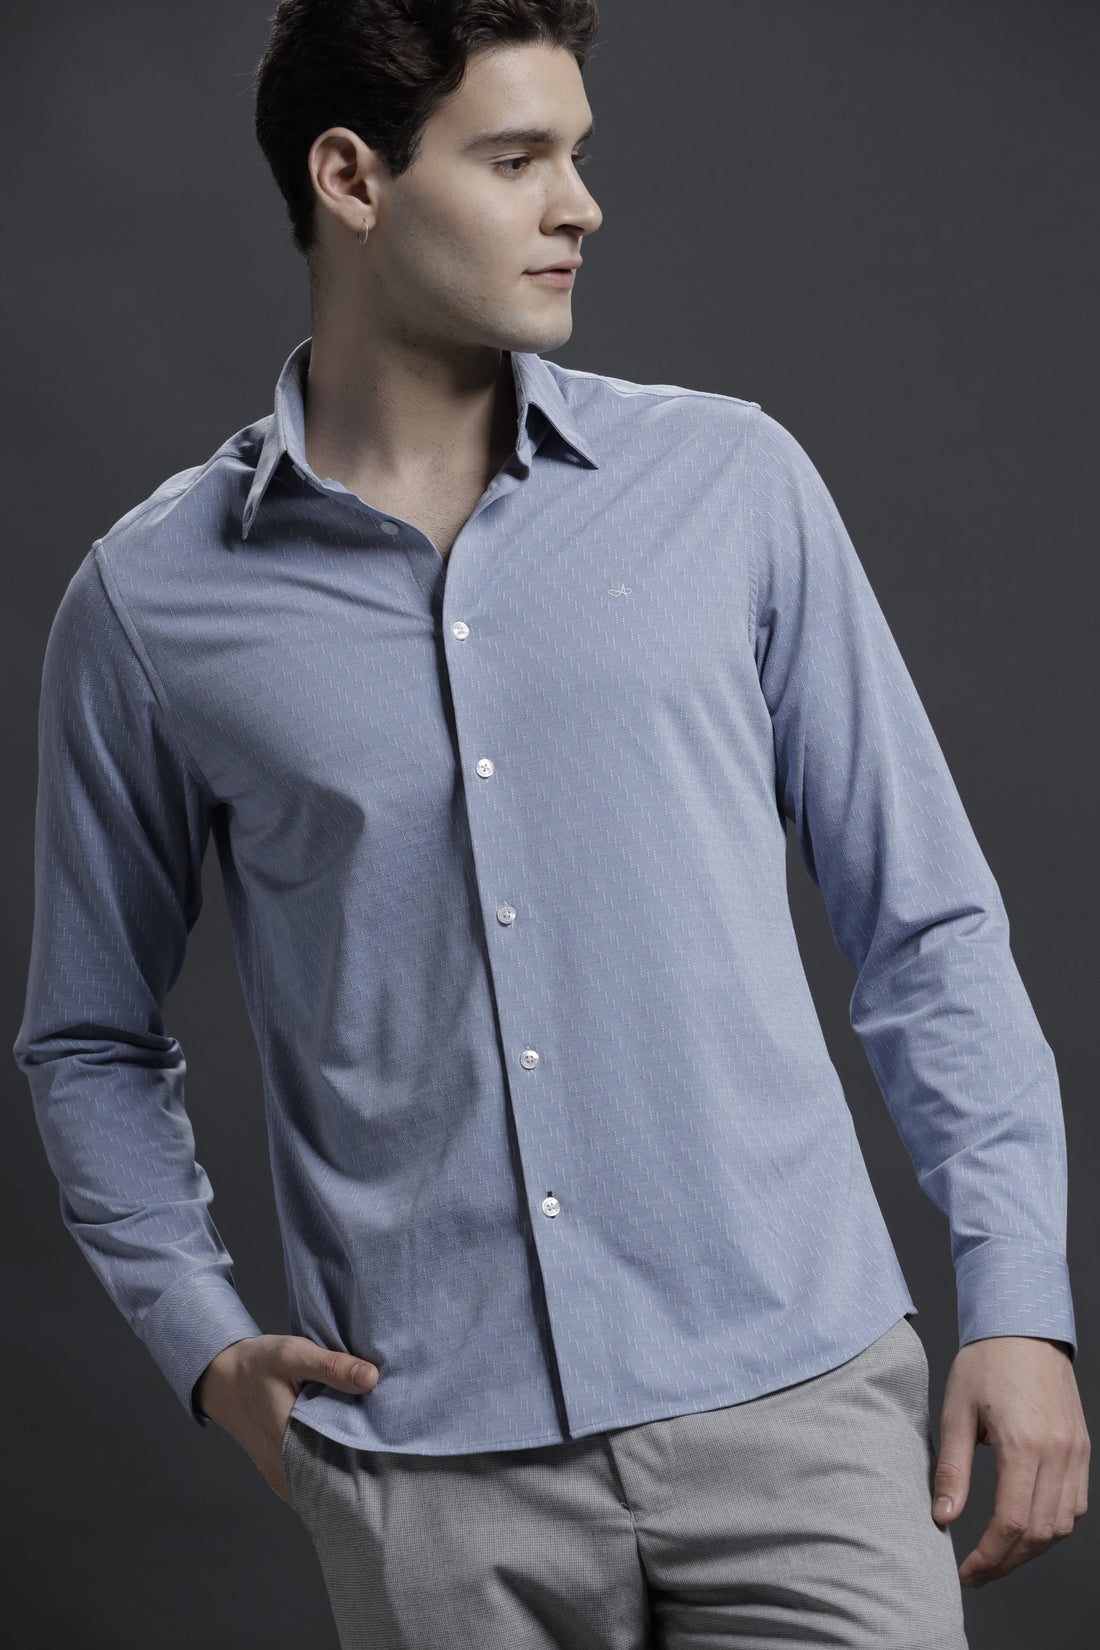 Textured Blue Casual Cotton Blend Shirt